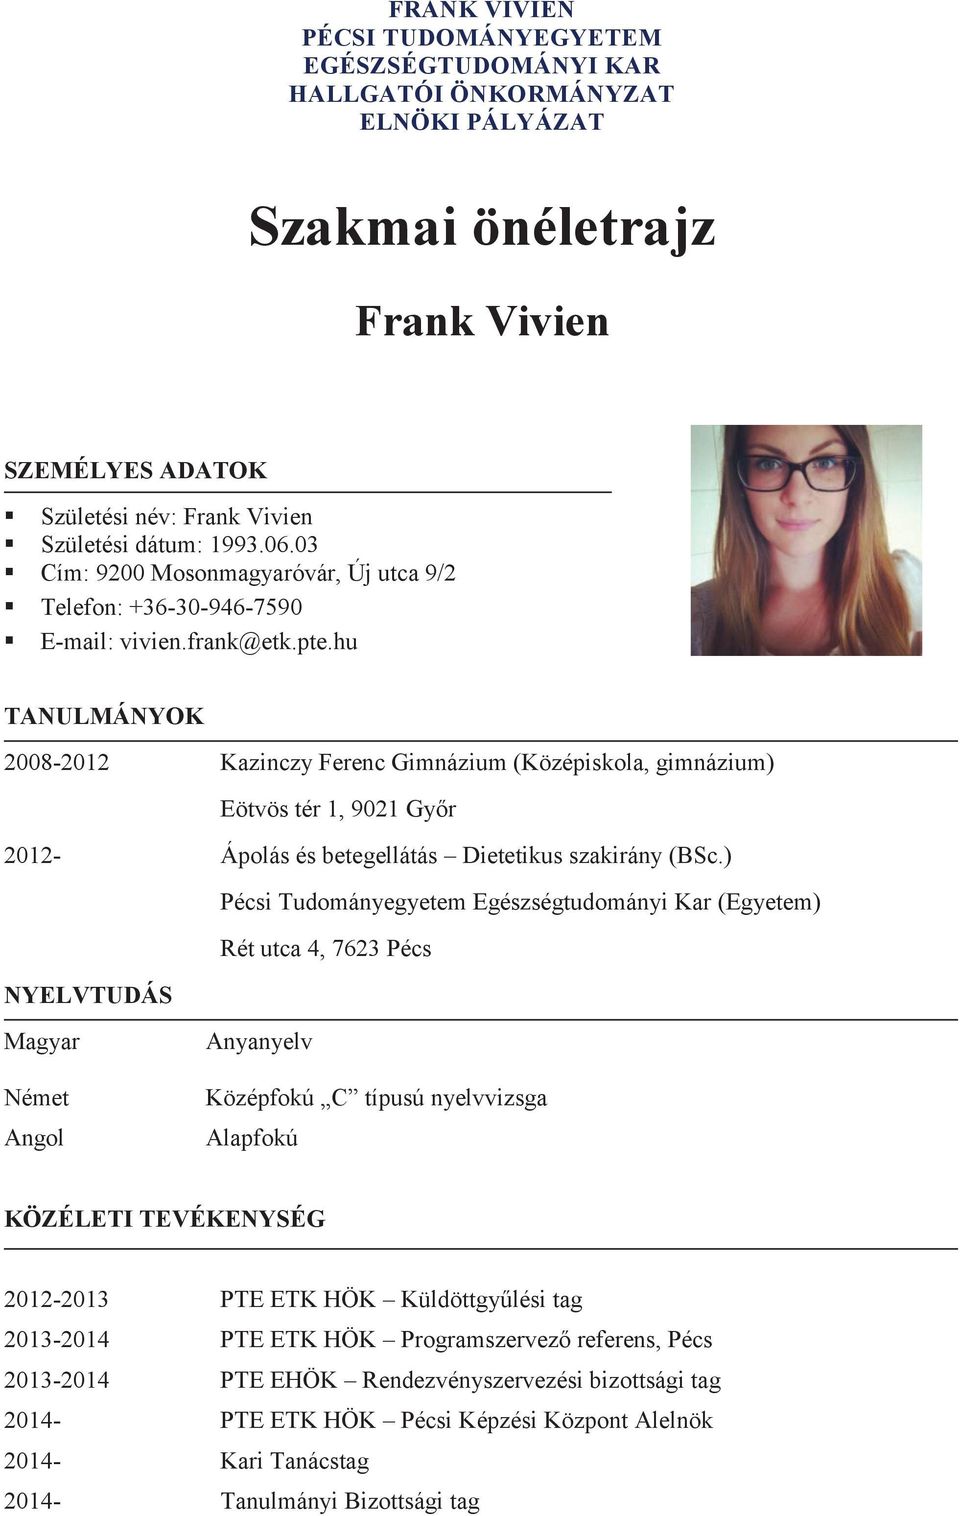 FRANK VIVIEN PÉCSI TUDOMÁNYEGYETEM EGÉSZSÉGTUDOMÁNYI KAR HALLGATÓI  ÖNKORMÁNYZAT ELNÖKI PÁLYÁZAT. Szakmai önéletrajz. Frank Vivien - PDF  Ingyenes letöltés